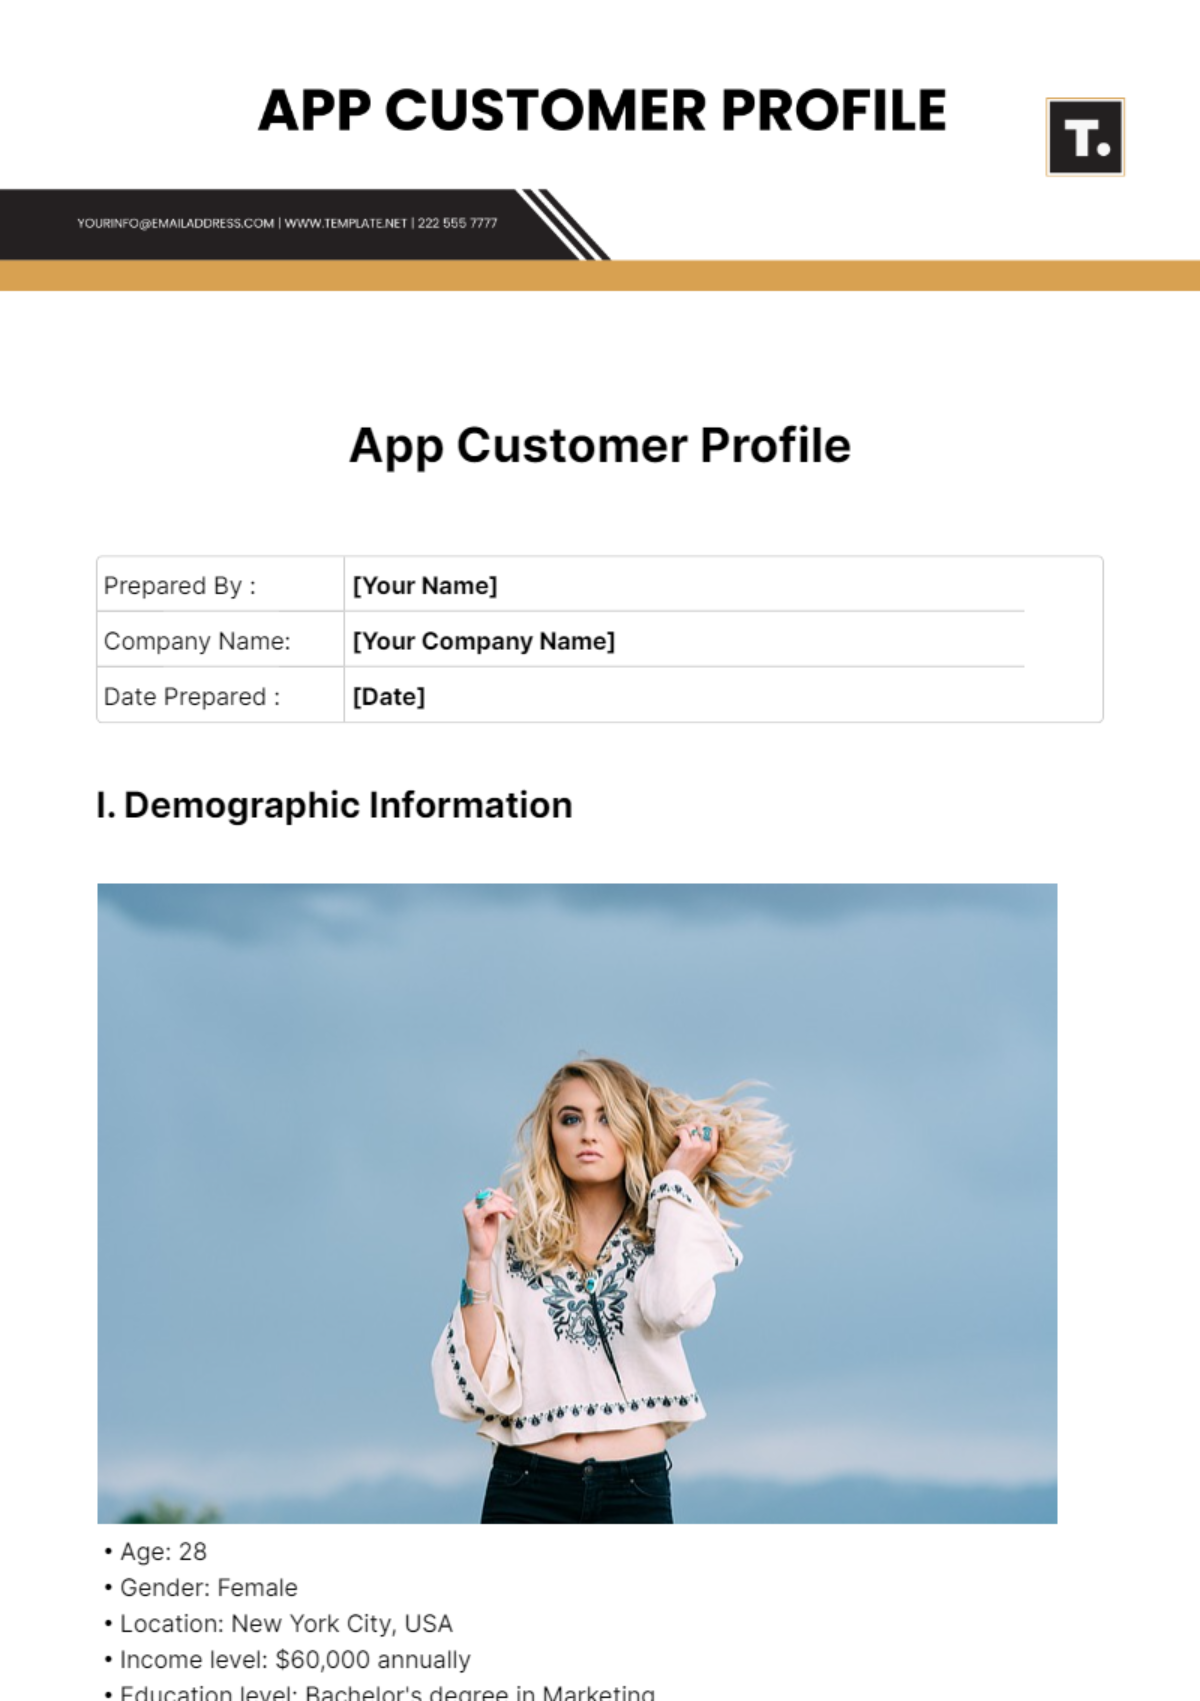 App Customer Profile Template